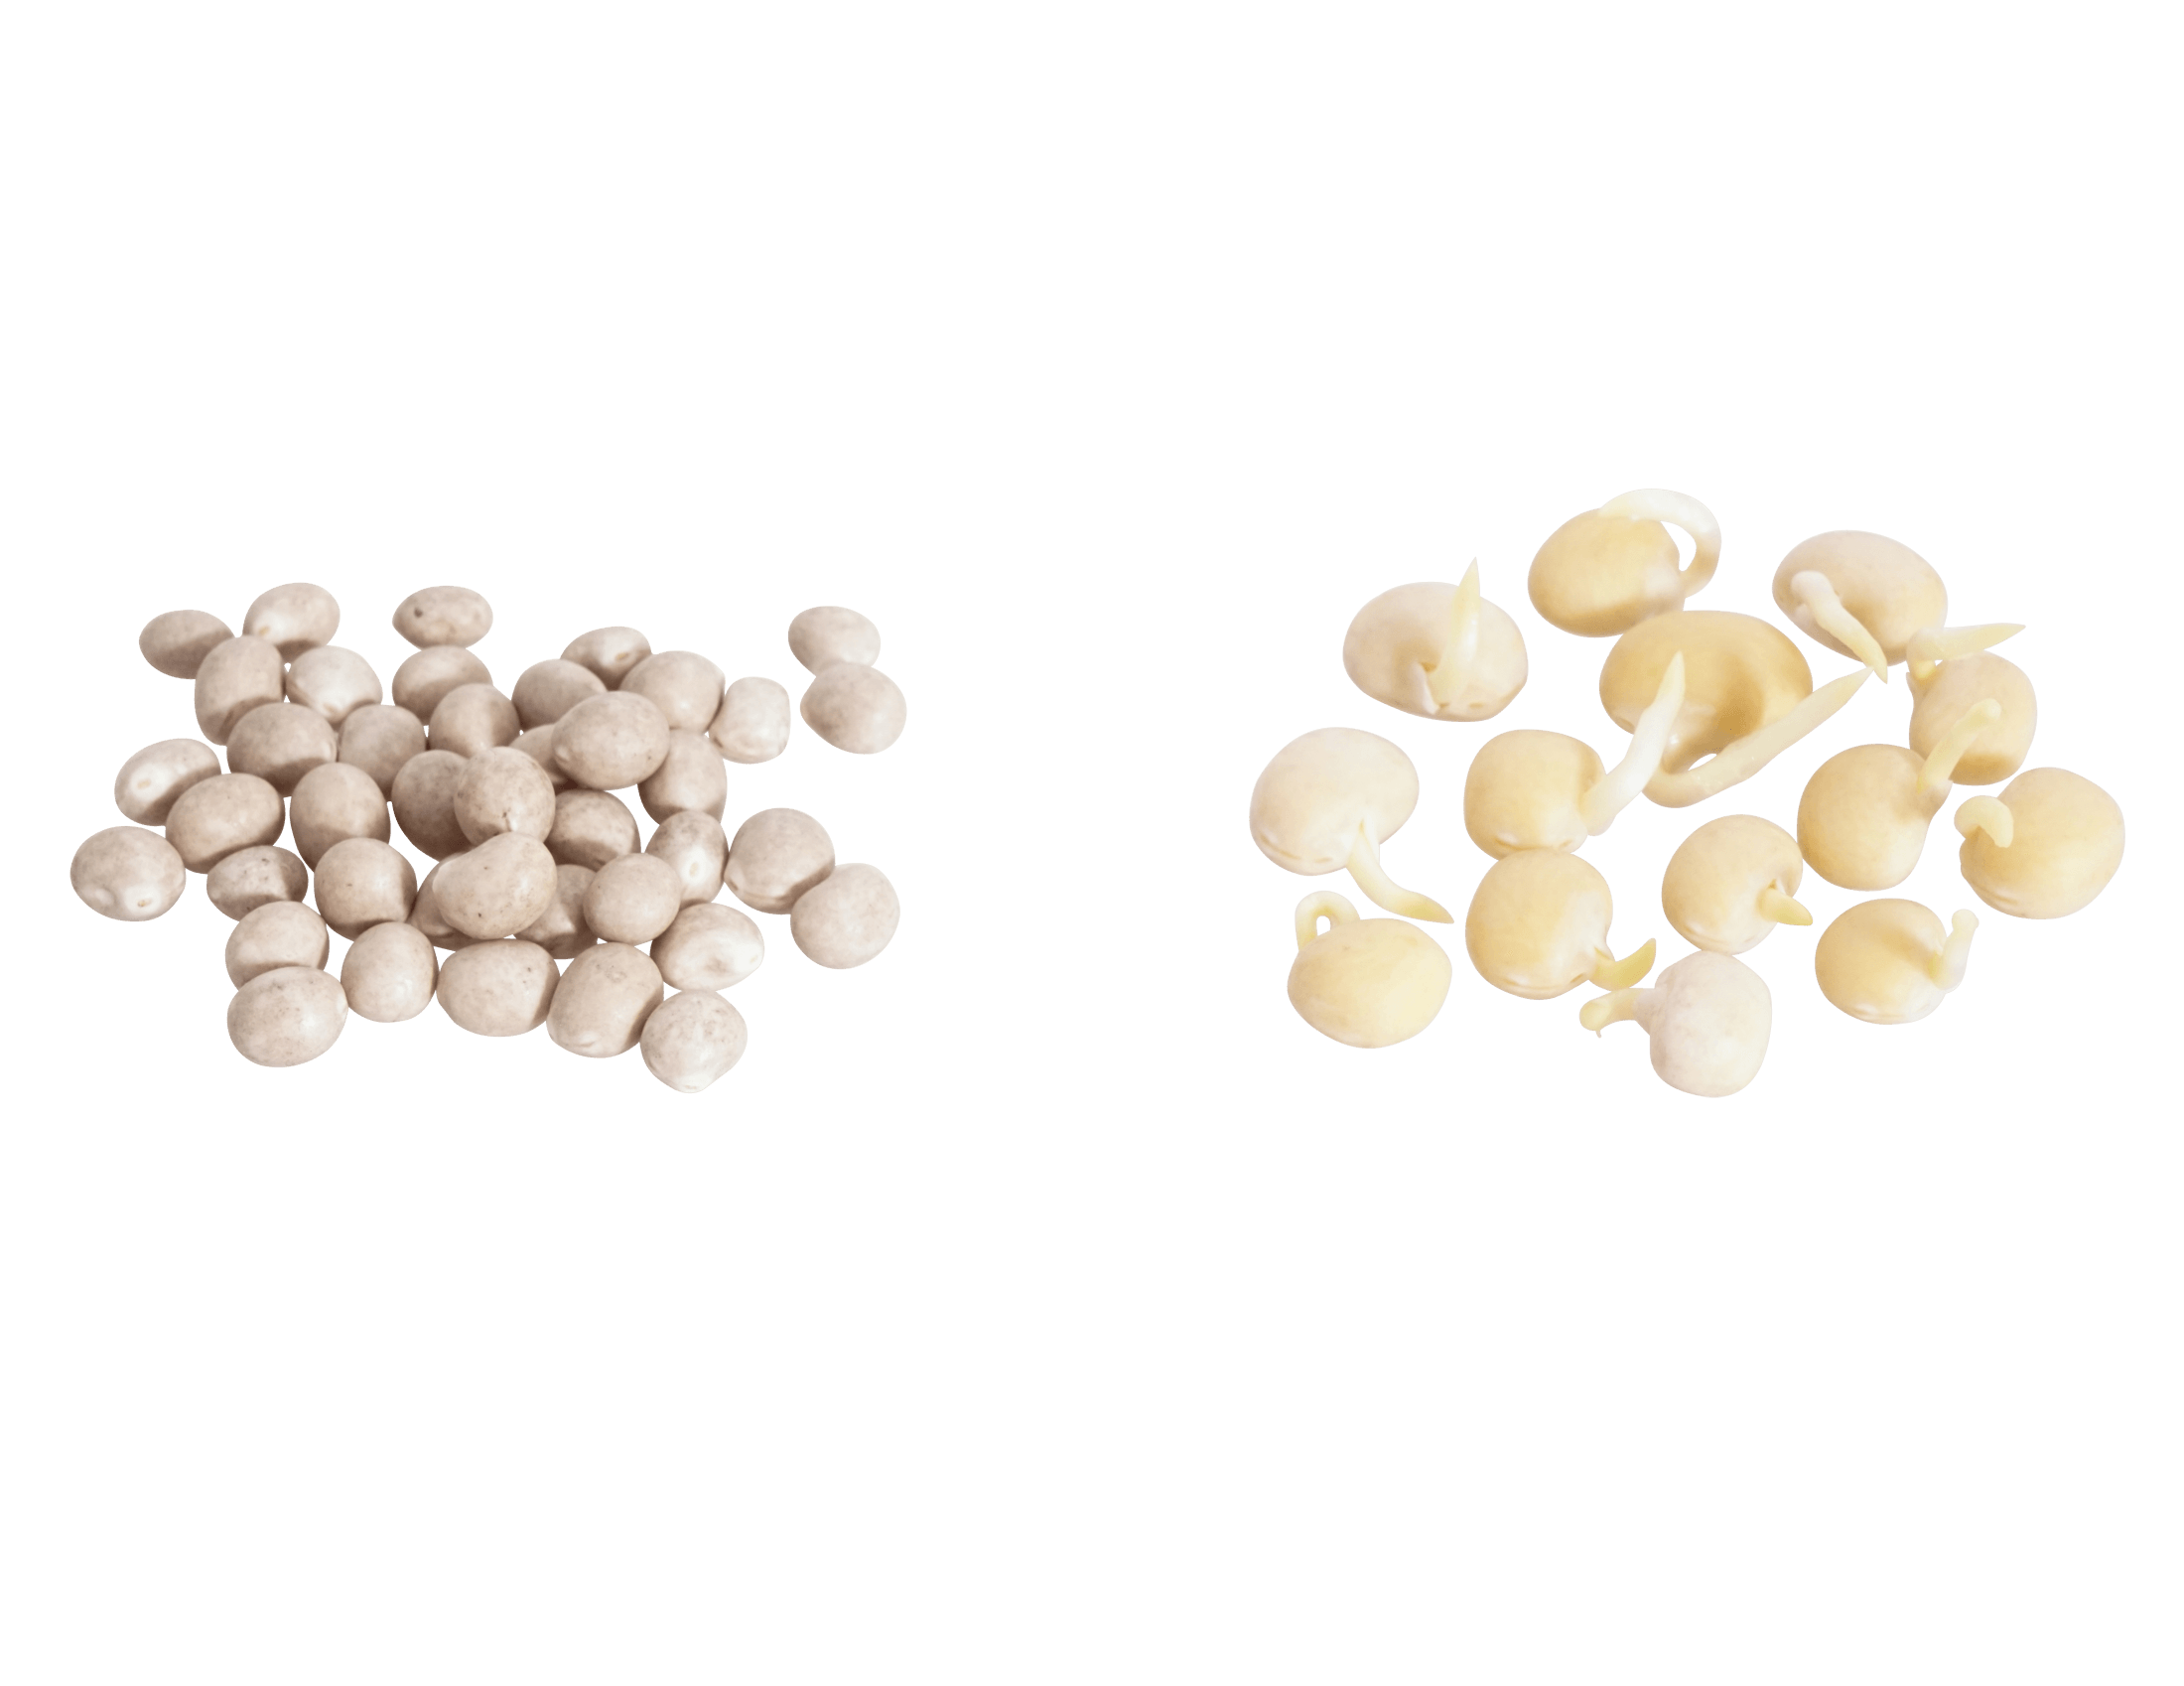 Süßlupinen Samen BIO keimfähig 500 g